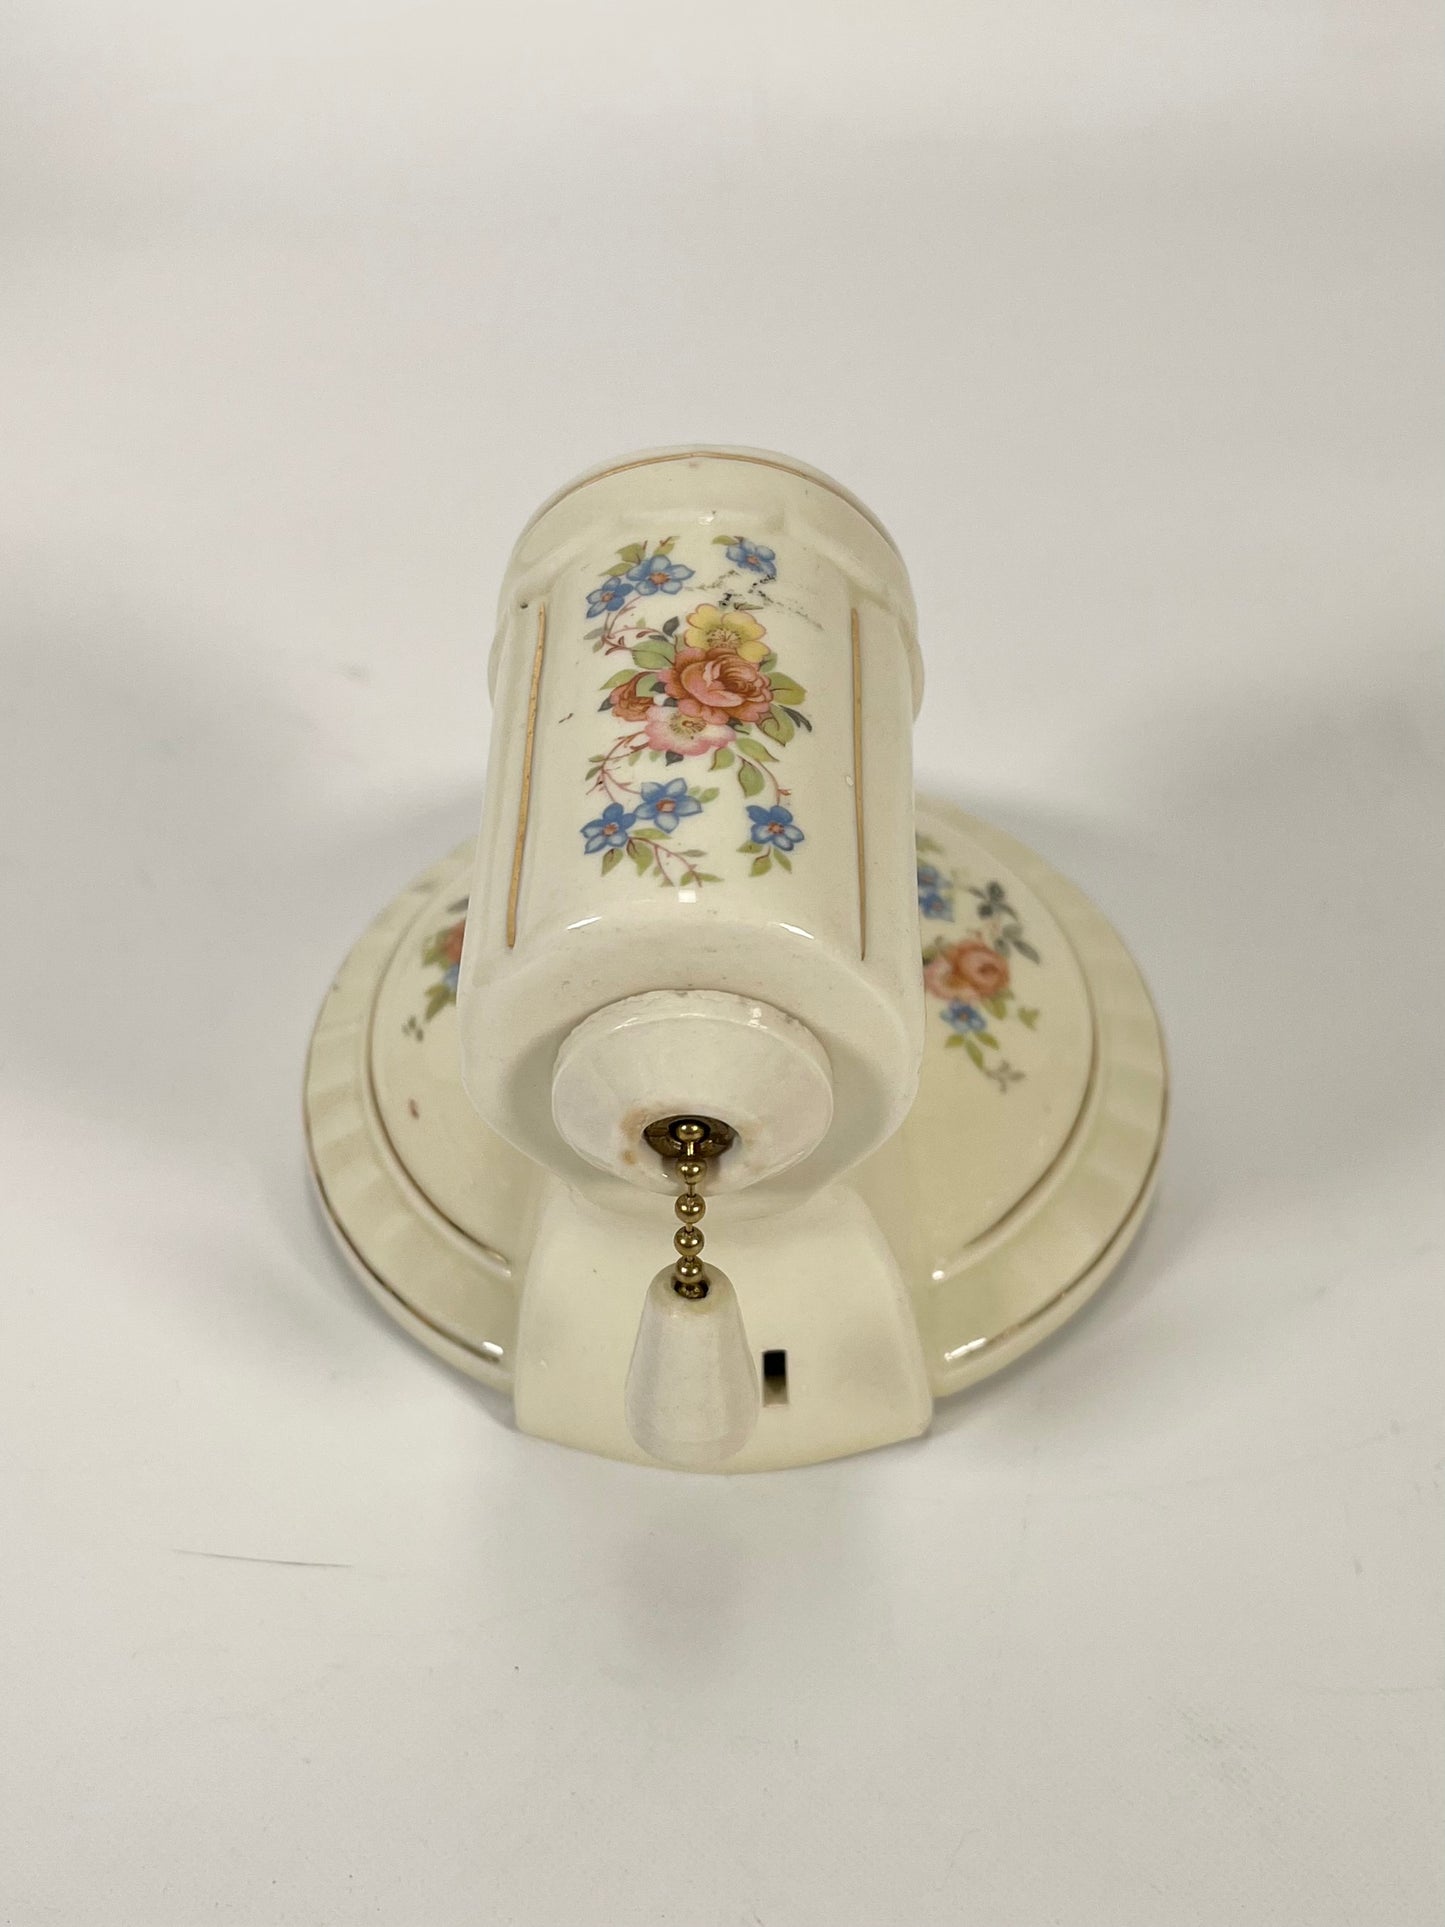 Antique Porcelain Floral Sconce - 1